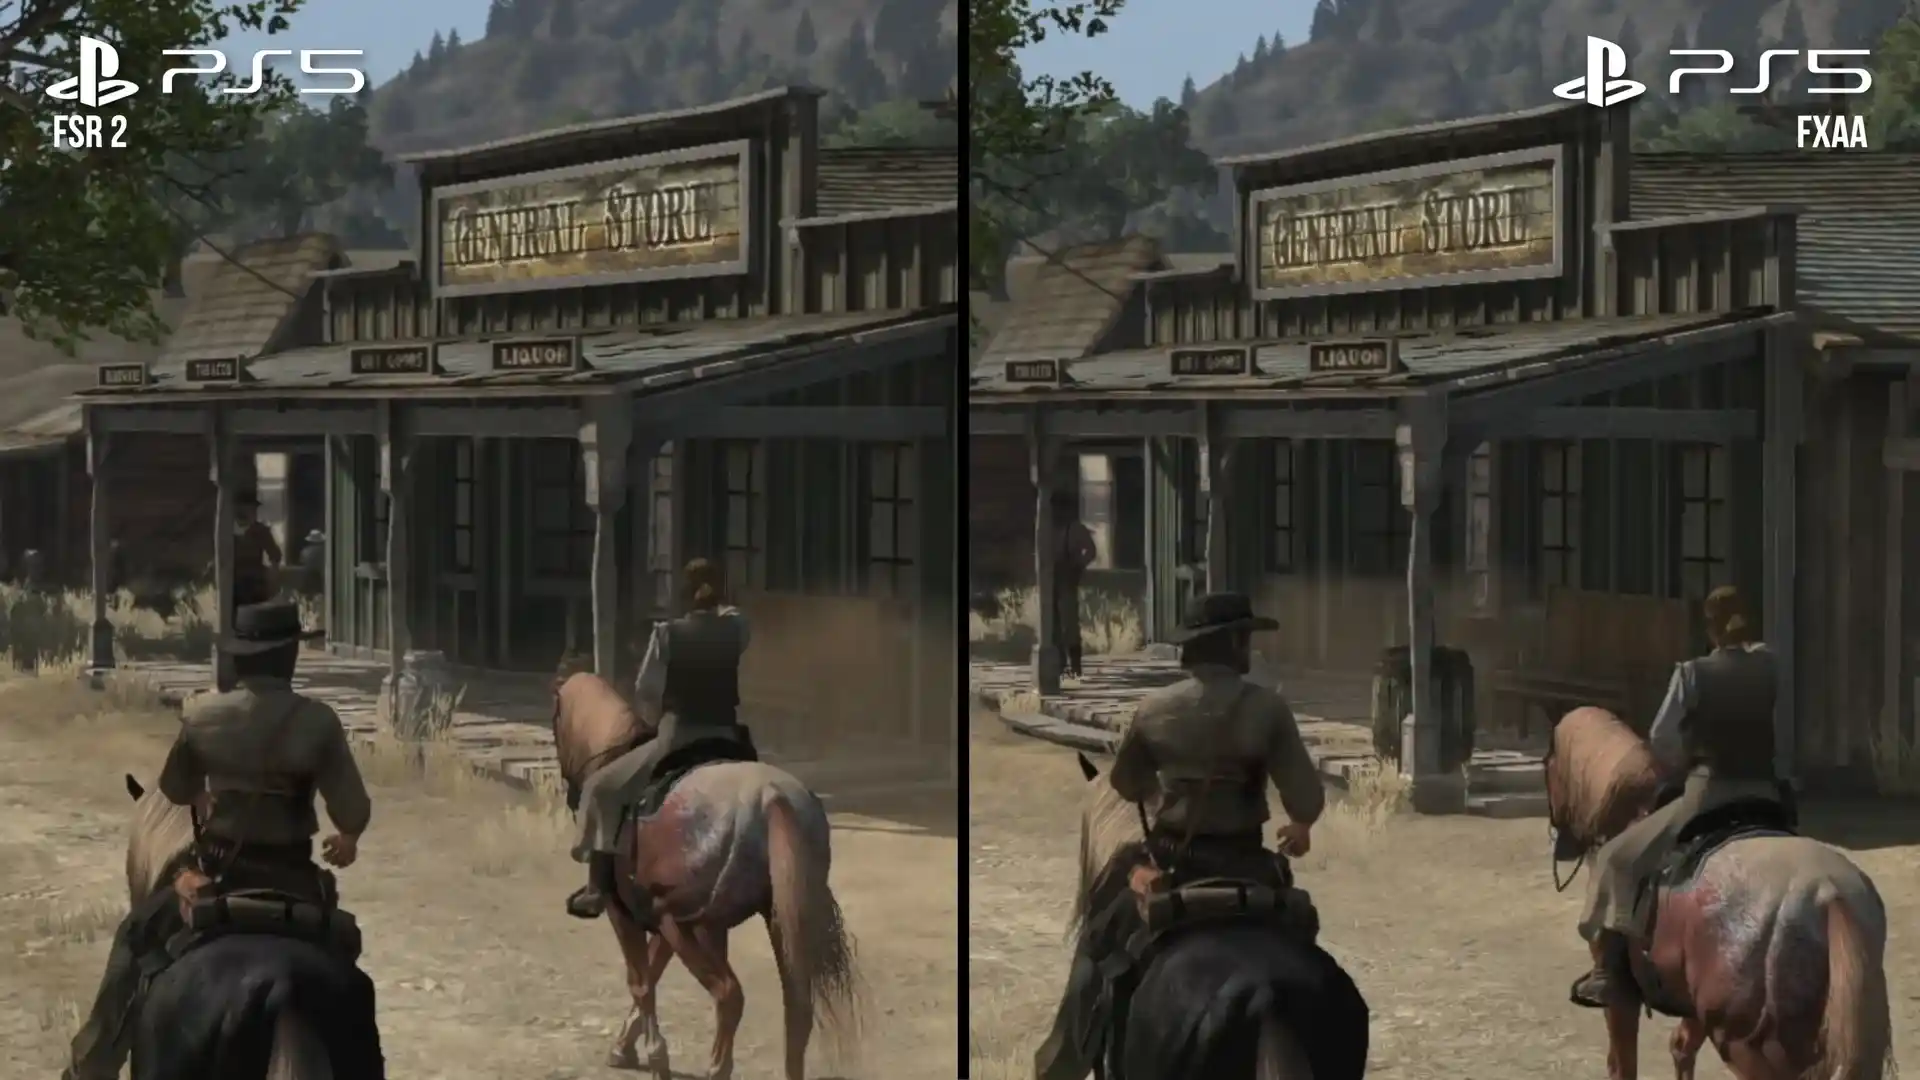 Red Dead Redemption - analisi comparativa frame rate e risoluzione versioni PS3 vs Switch vs PS4 vs PS5 vs Series X/S